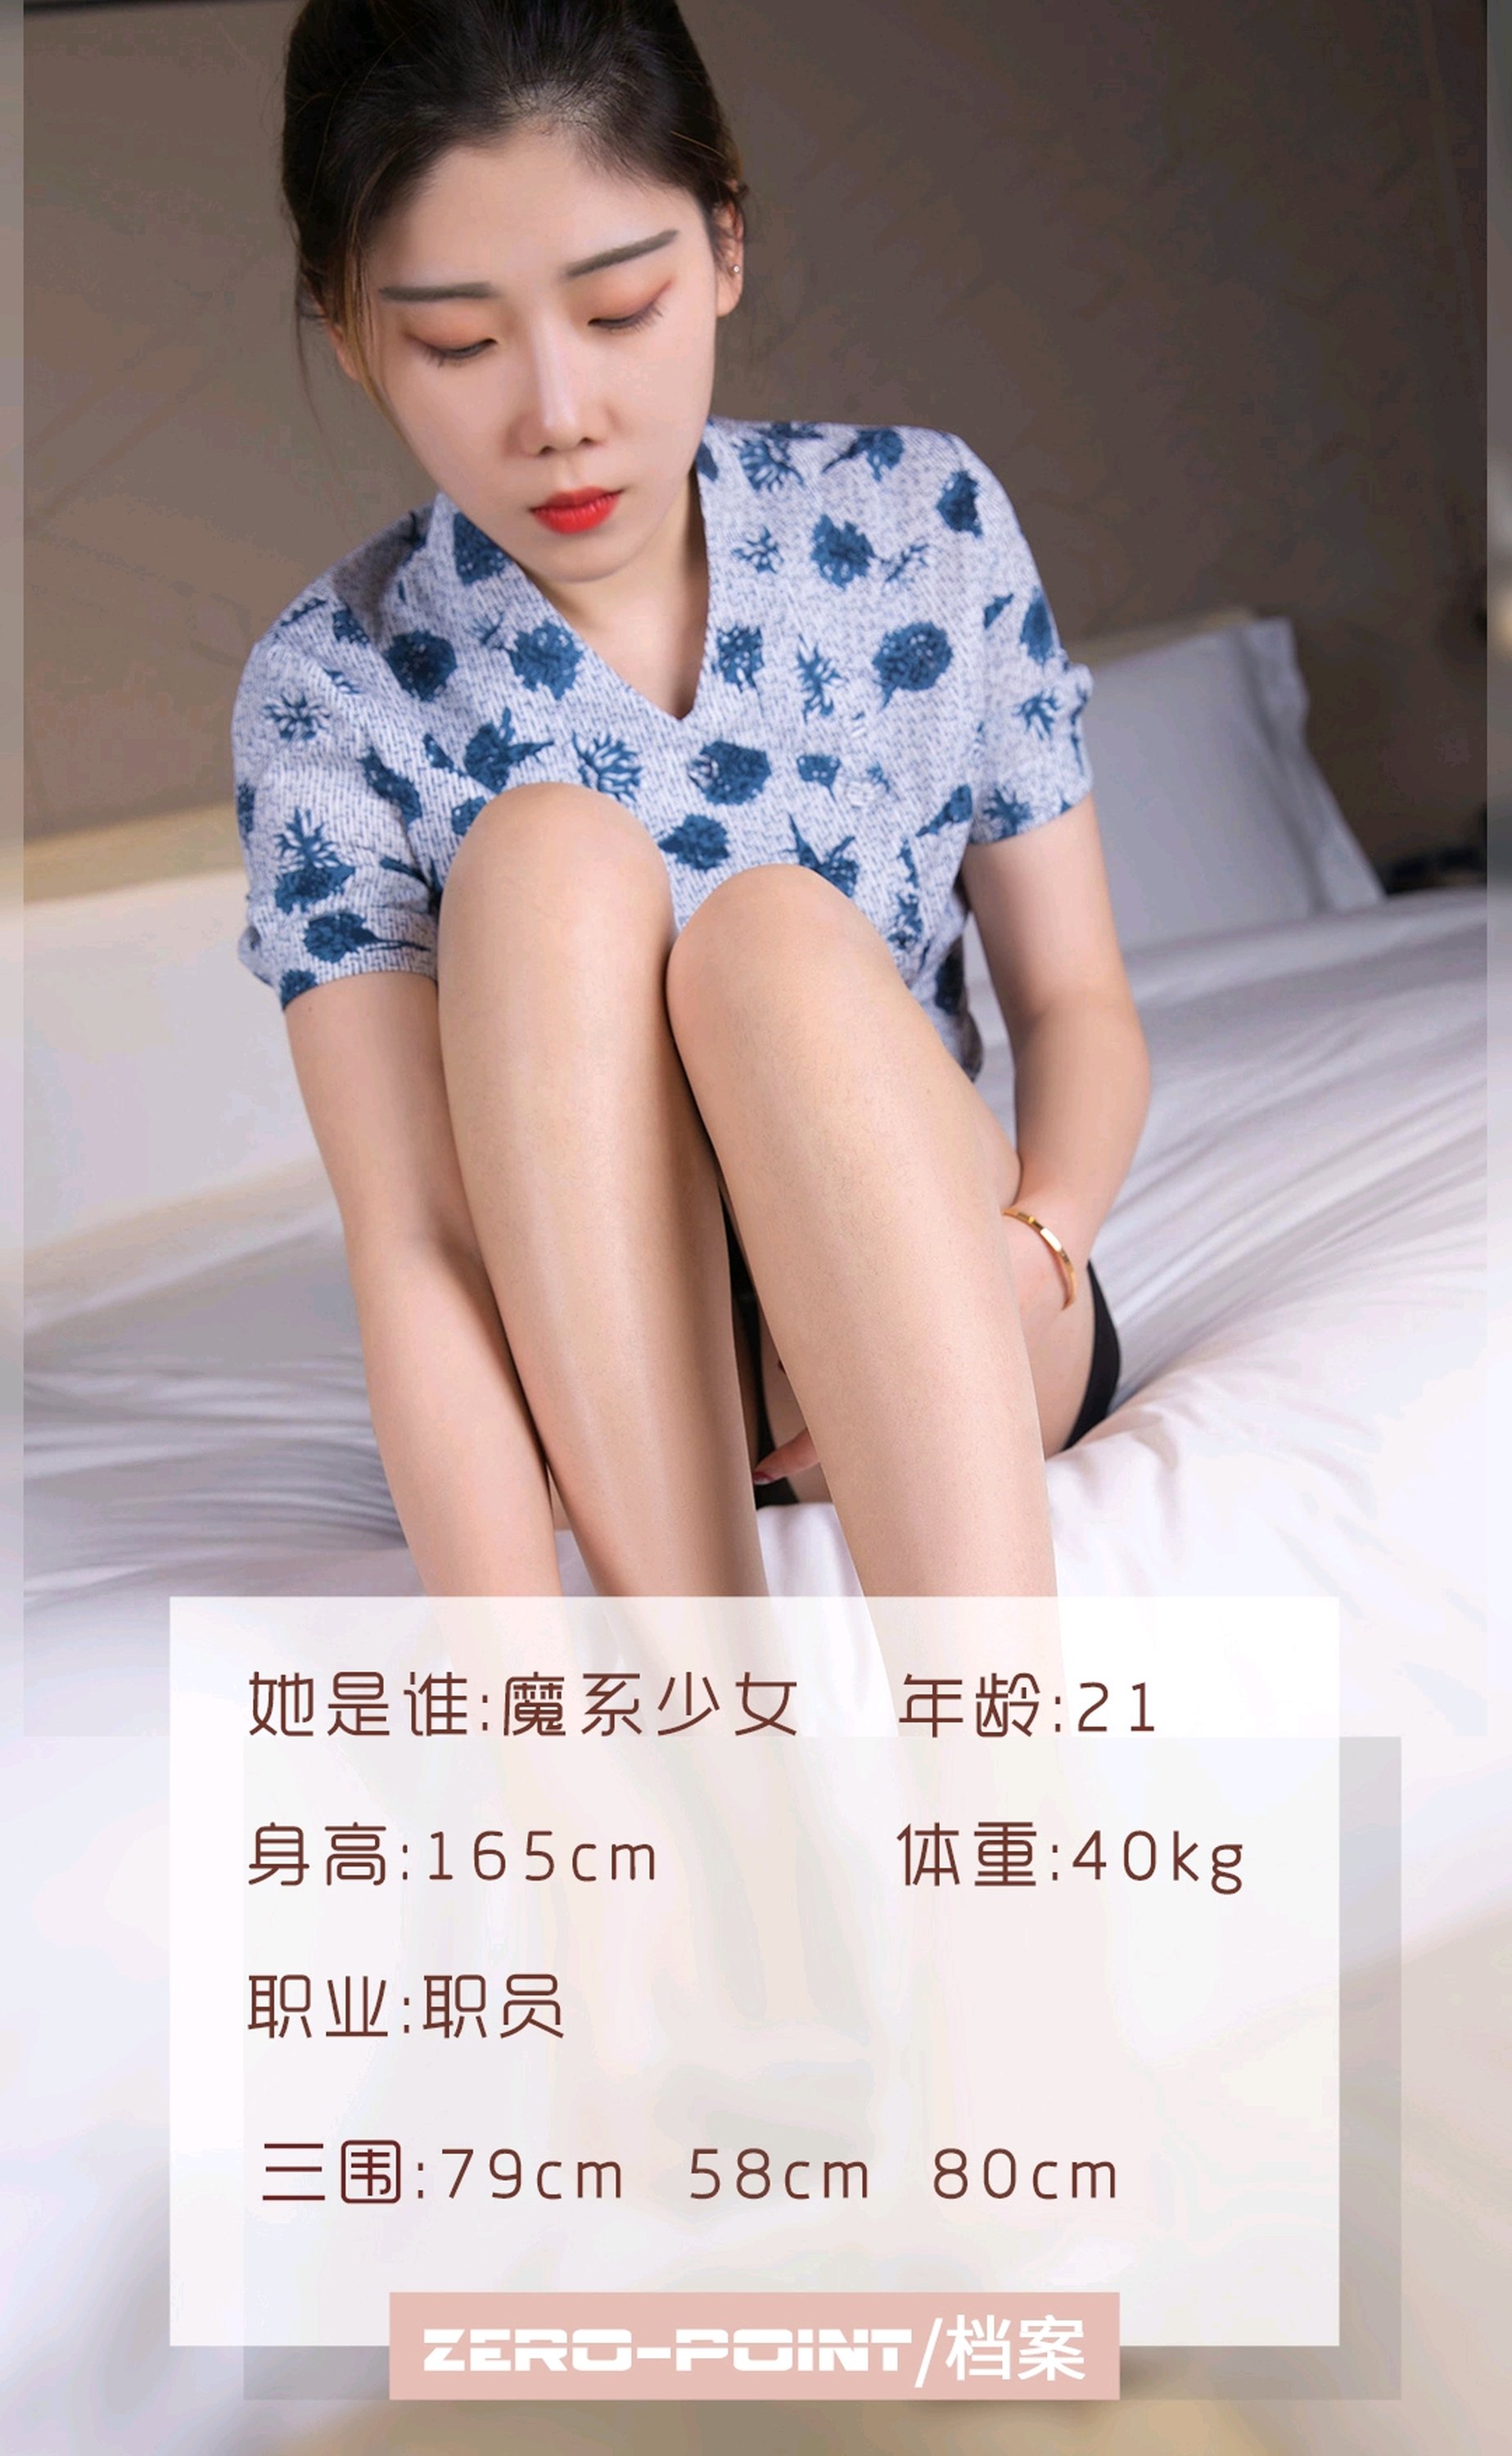 【零度攝影系列】2020.01.09 魔系少女 OL  高跟絲腿【44P】 - 貼圖 - 絲襪美腿 -